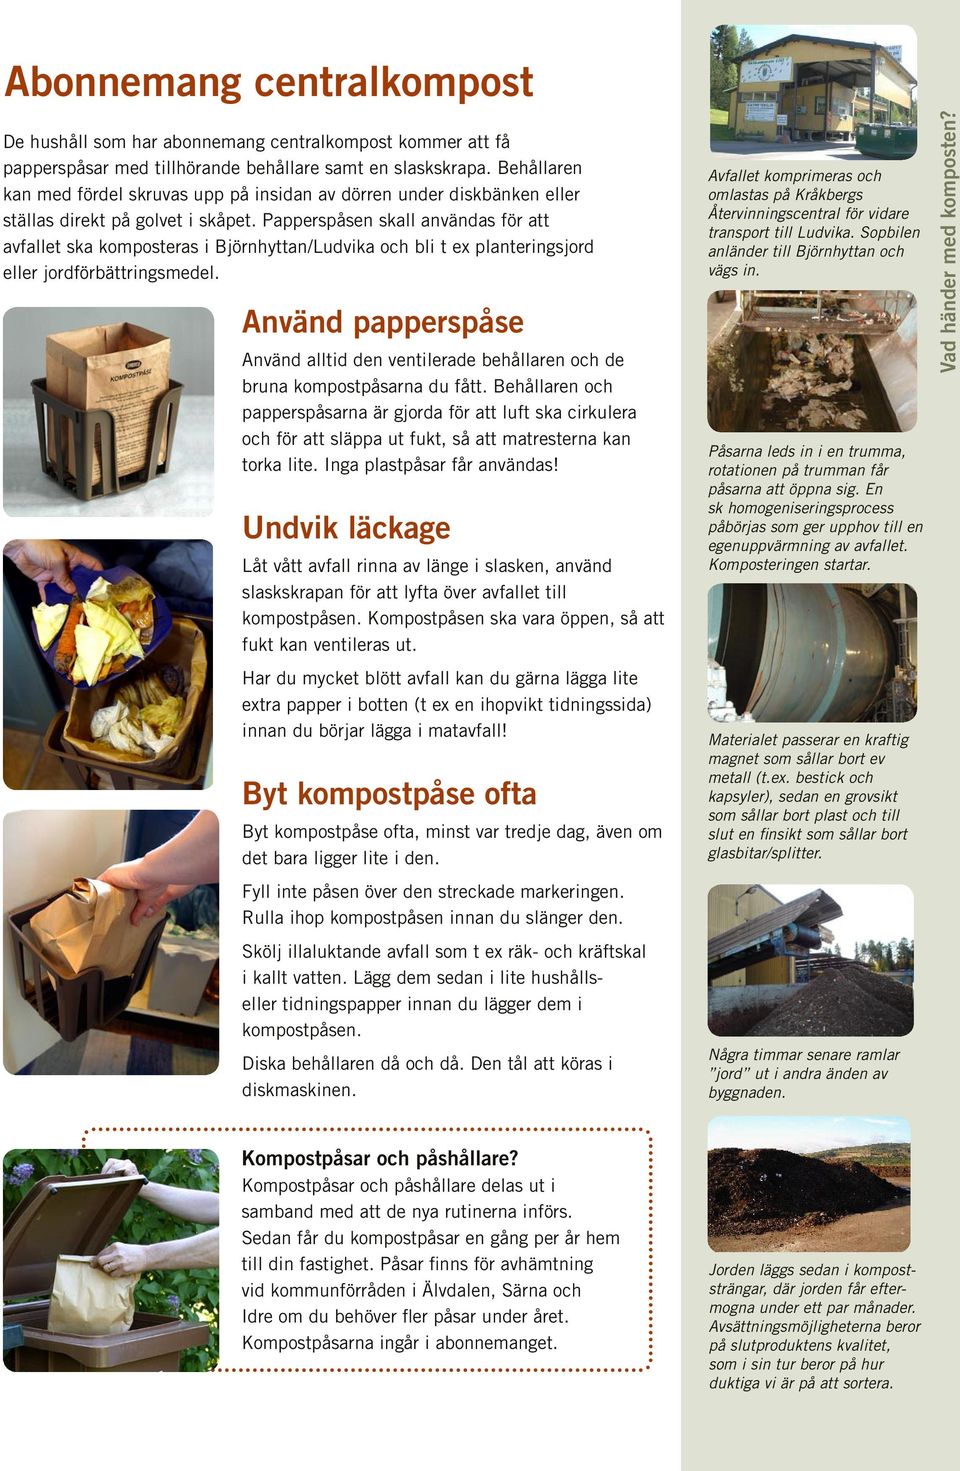 Papperspåsen skall användas för att avfallet ska komposteras i Björnhyttan/Ludvika och bli t ex planteringsjord eller jordförbättringsmedel.